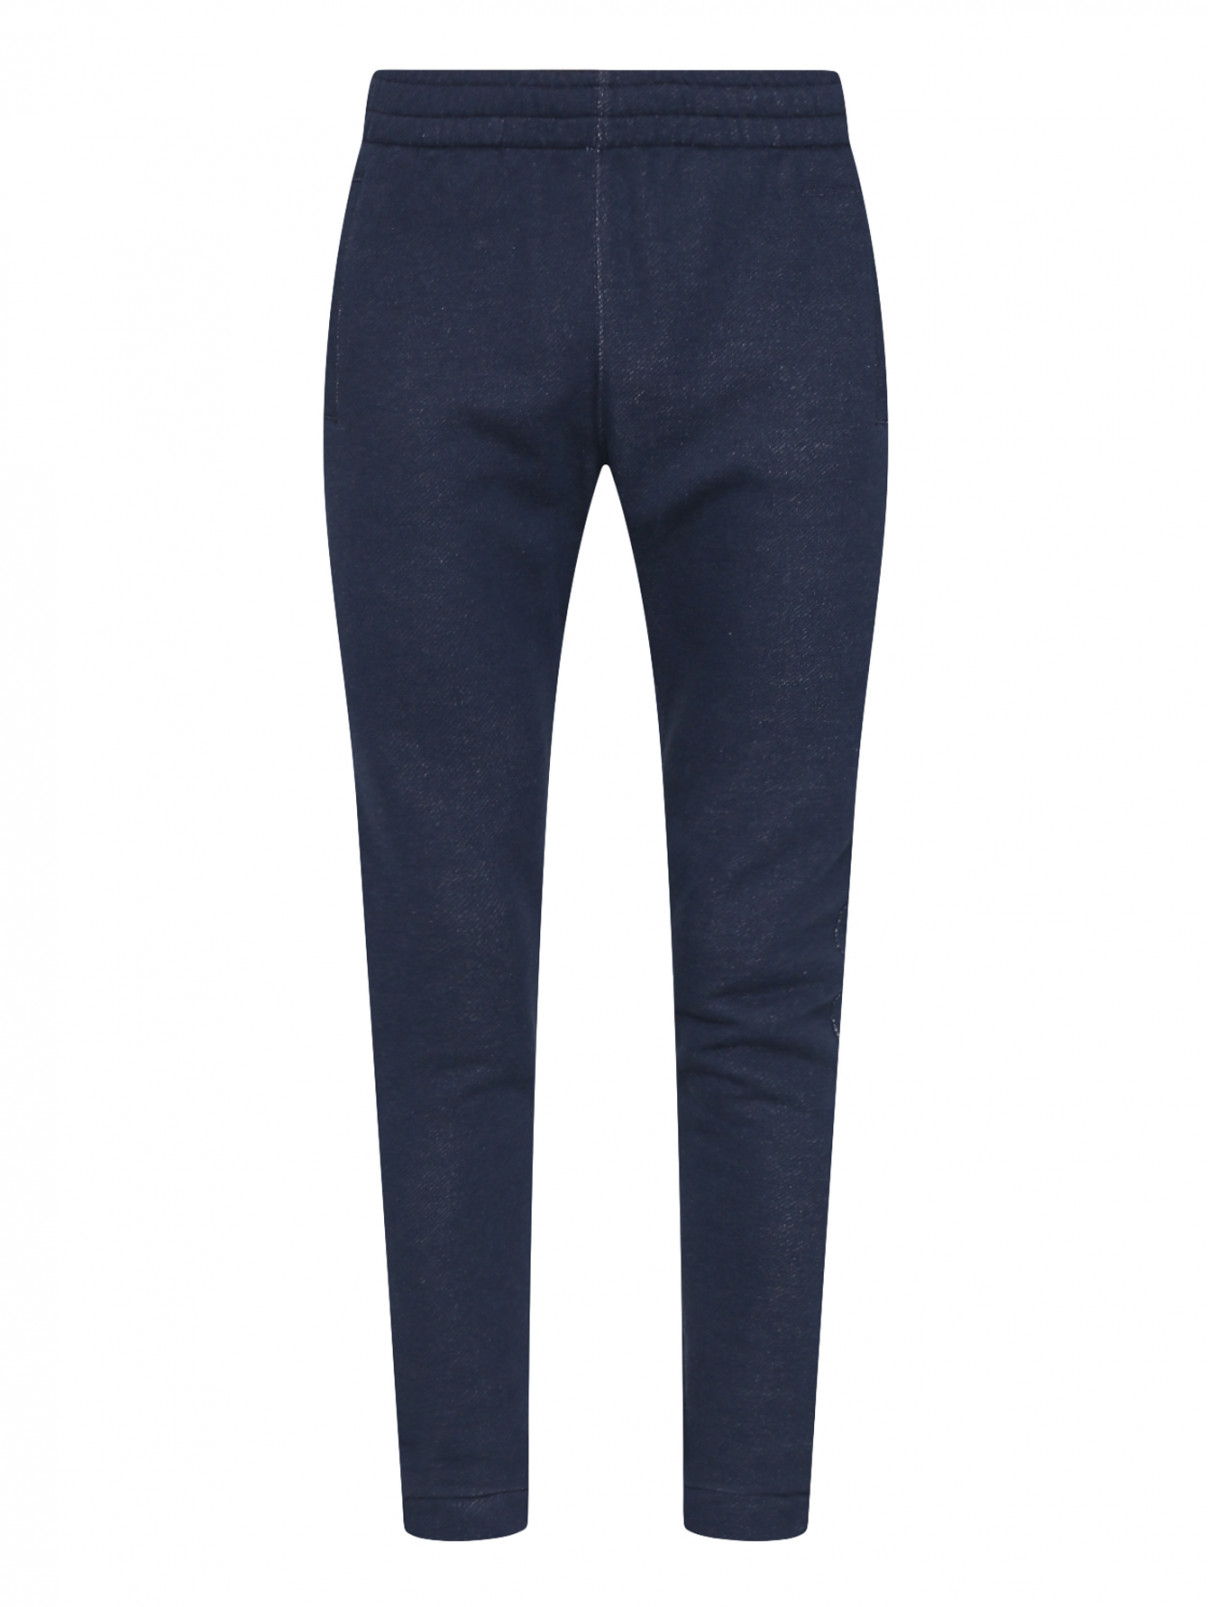 Спортивные брюки из хлопка на резинке Ermenegildo Zegna  –  Общий вид  – Цвет:  Синий